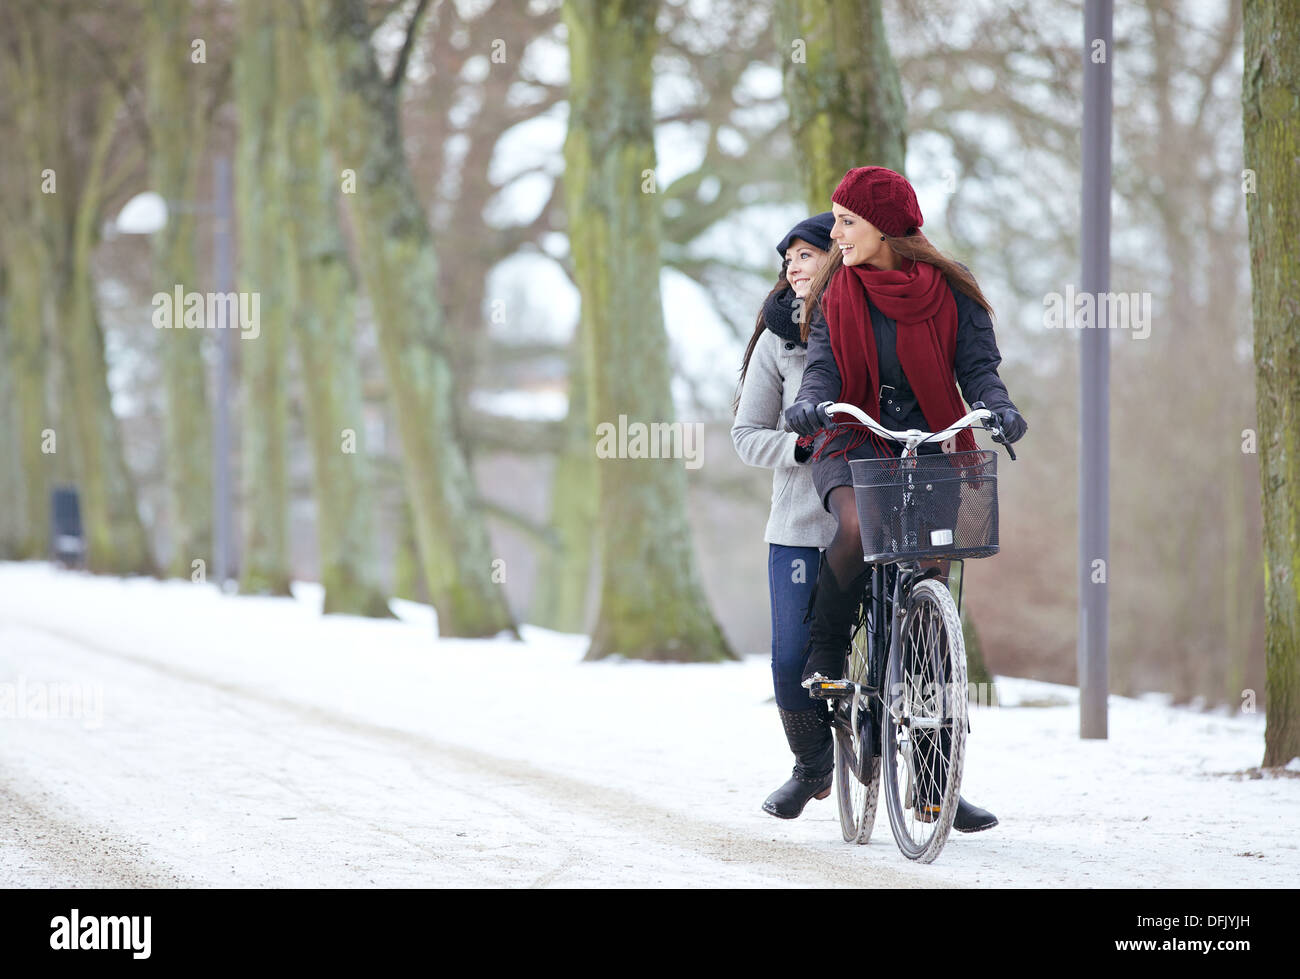 Fröhliche Frauen genießen Sie die Schönheit des Parks durch Fahrrad fahren zusammen Stockfoto